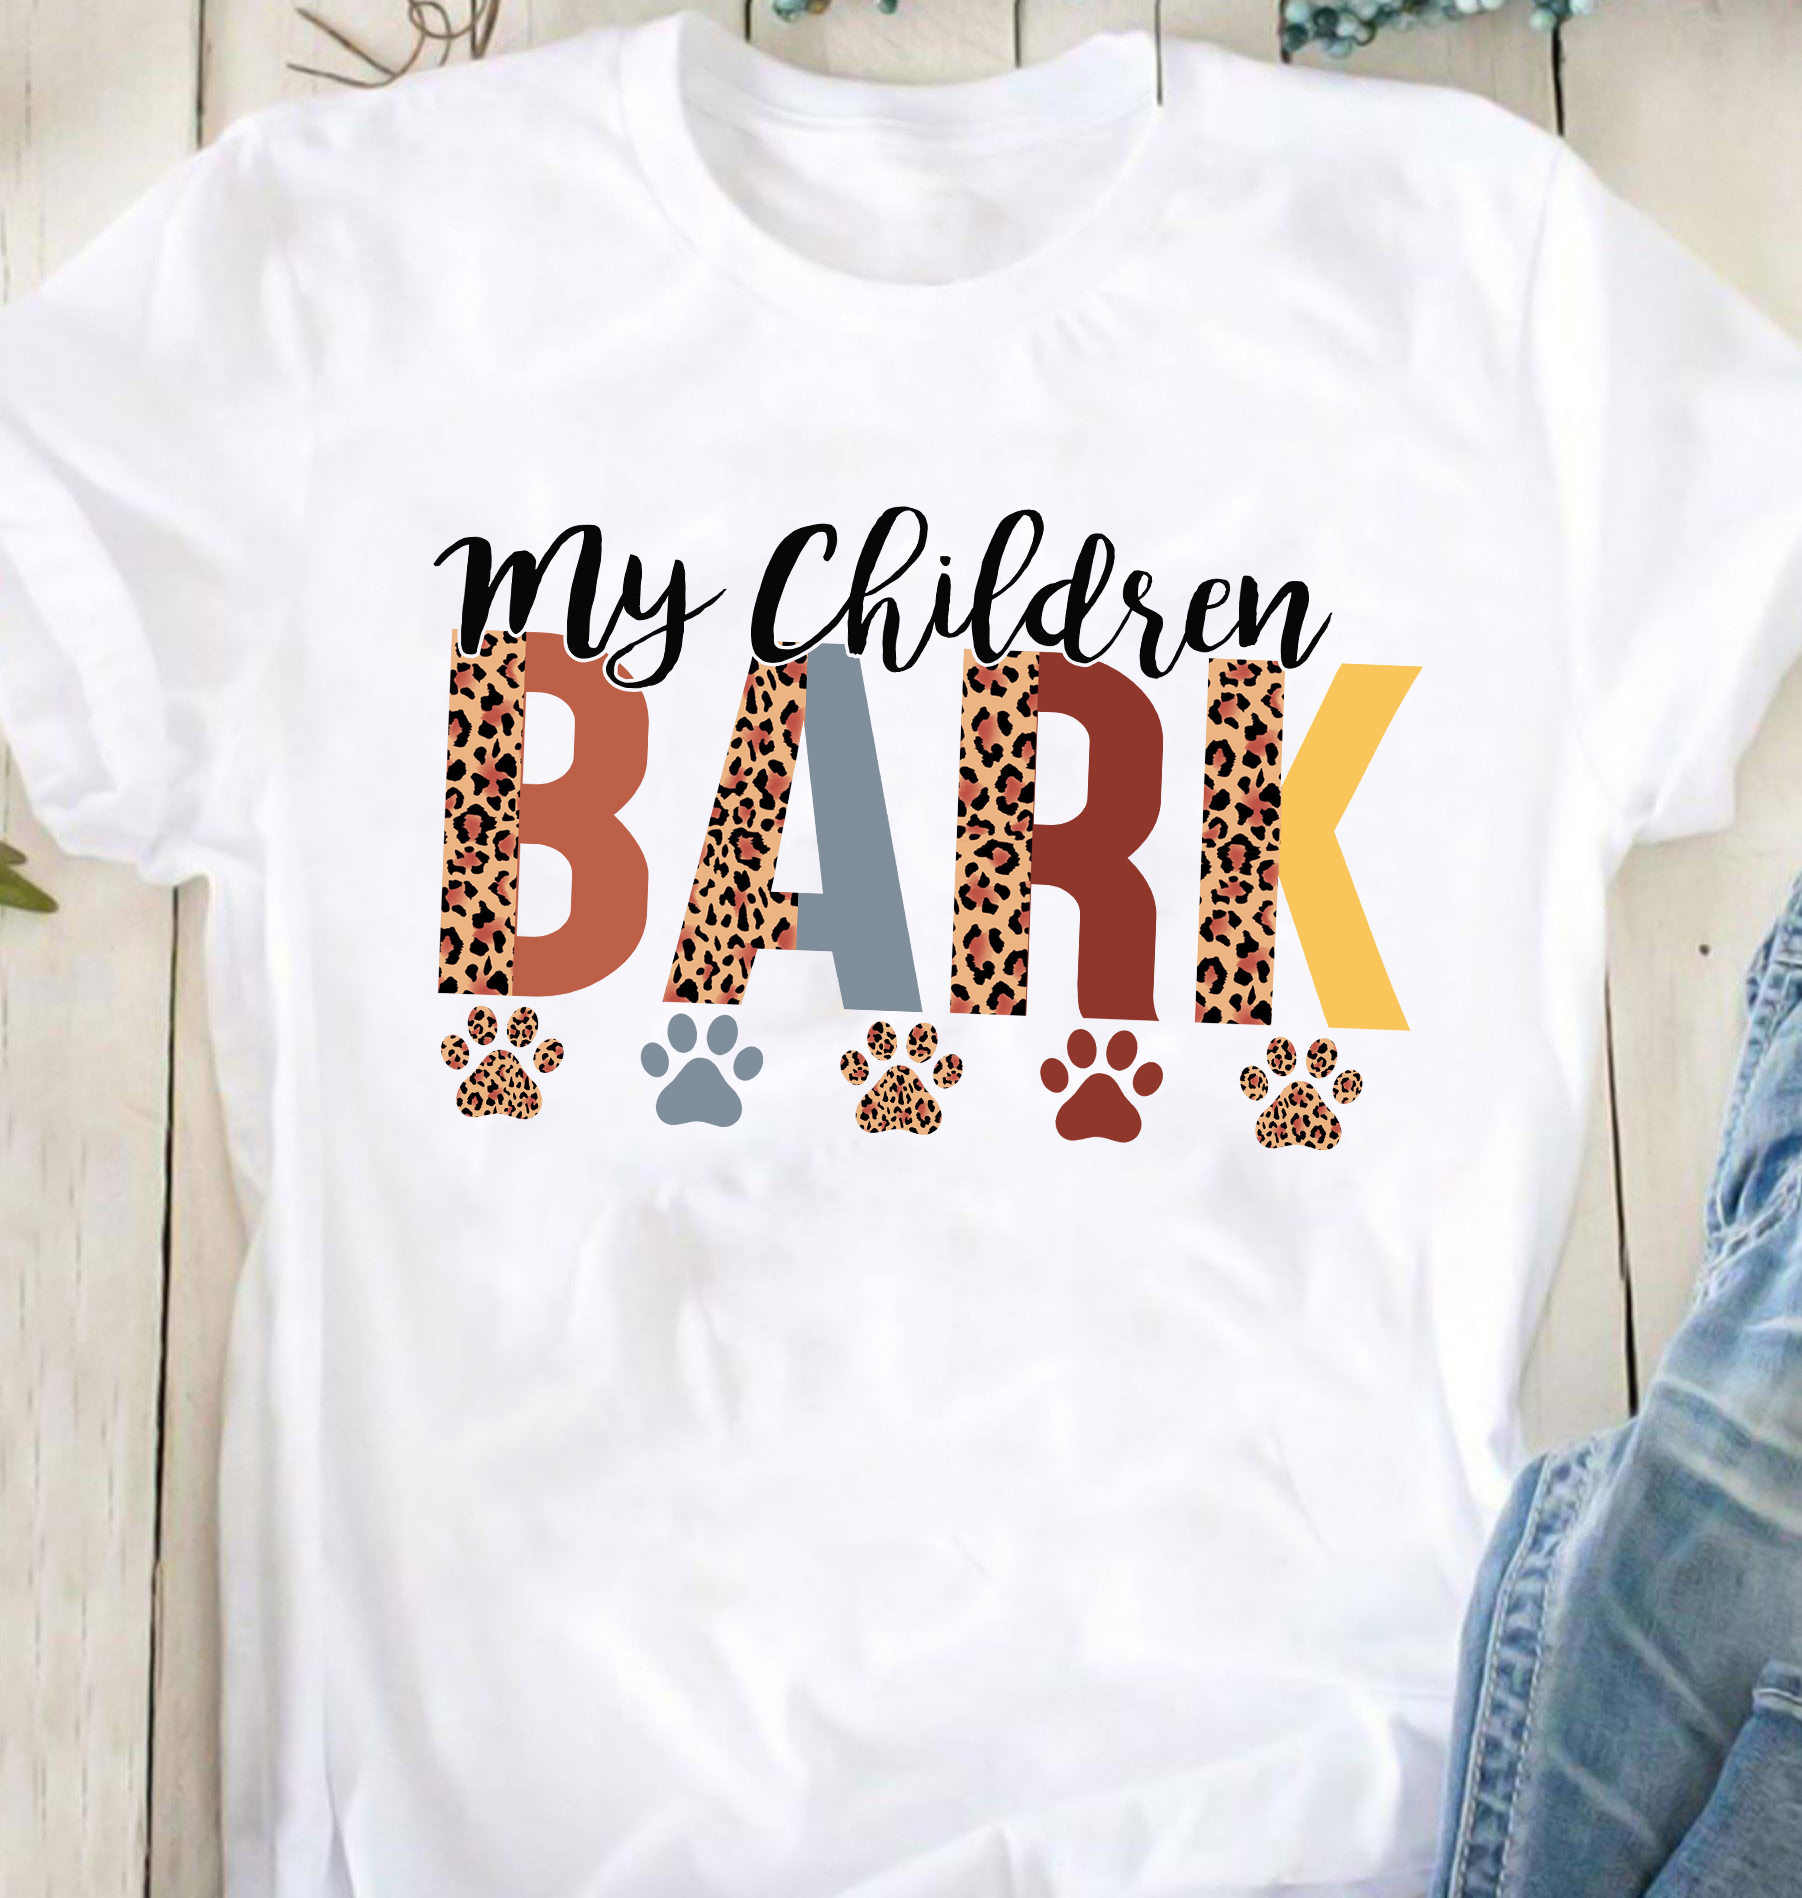 My children bark - Dog footprint, dog children, dog lover